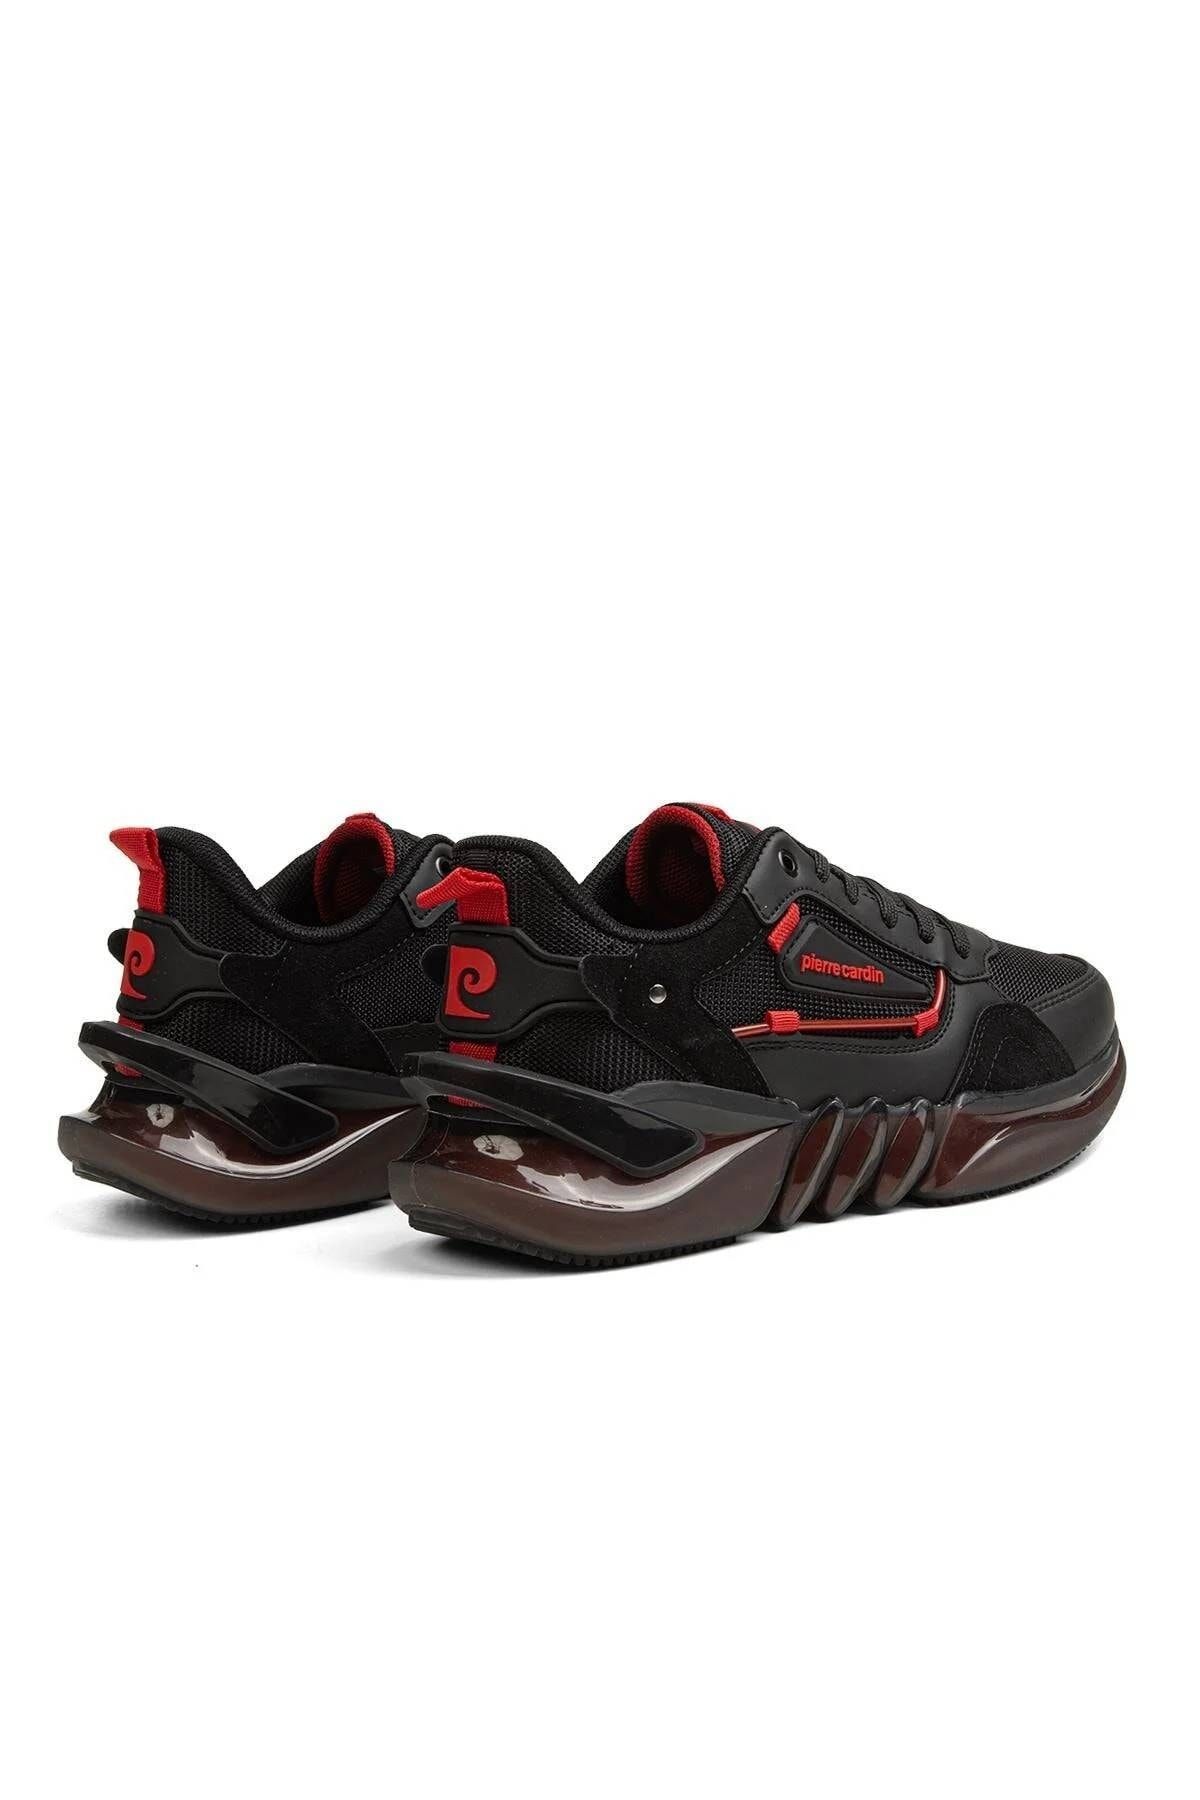 Pierre Cardin Pc-31362m Erkek Spor Ayakkabı Siyah Kırmızı